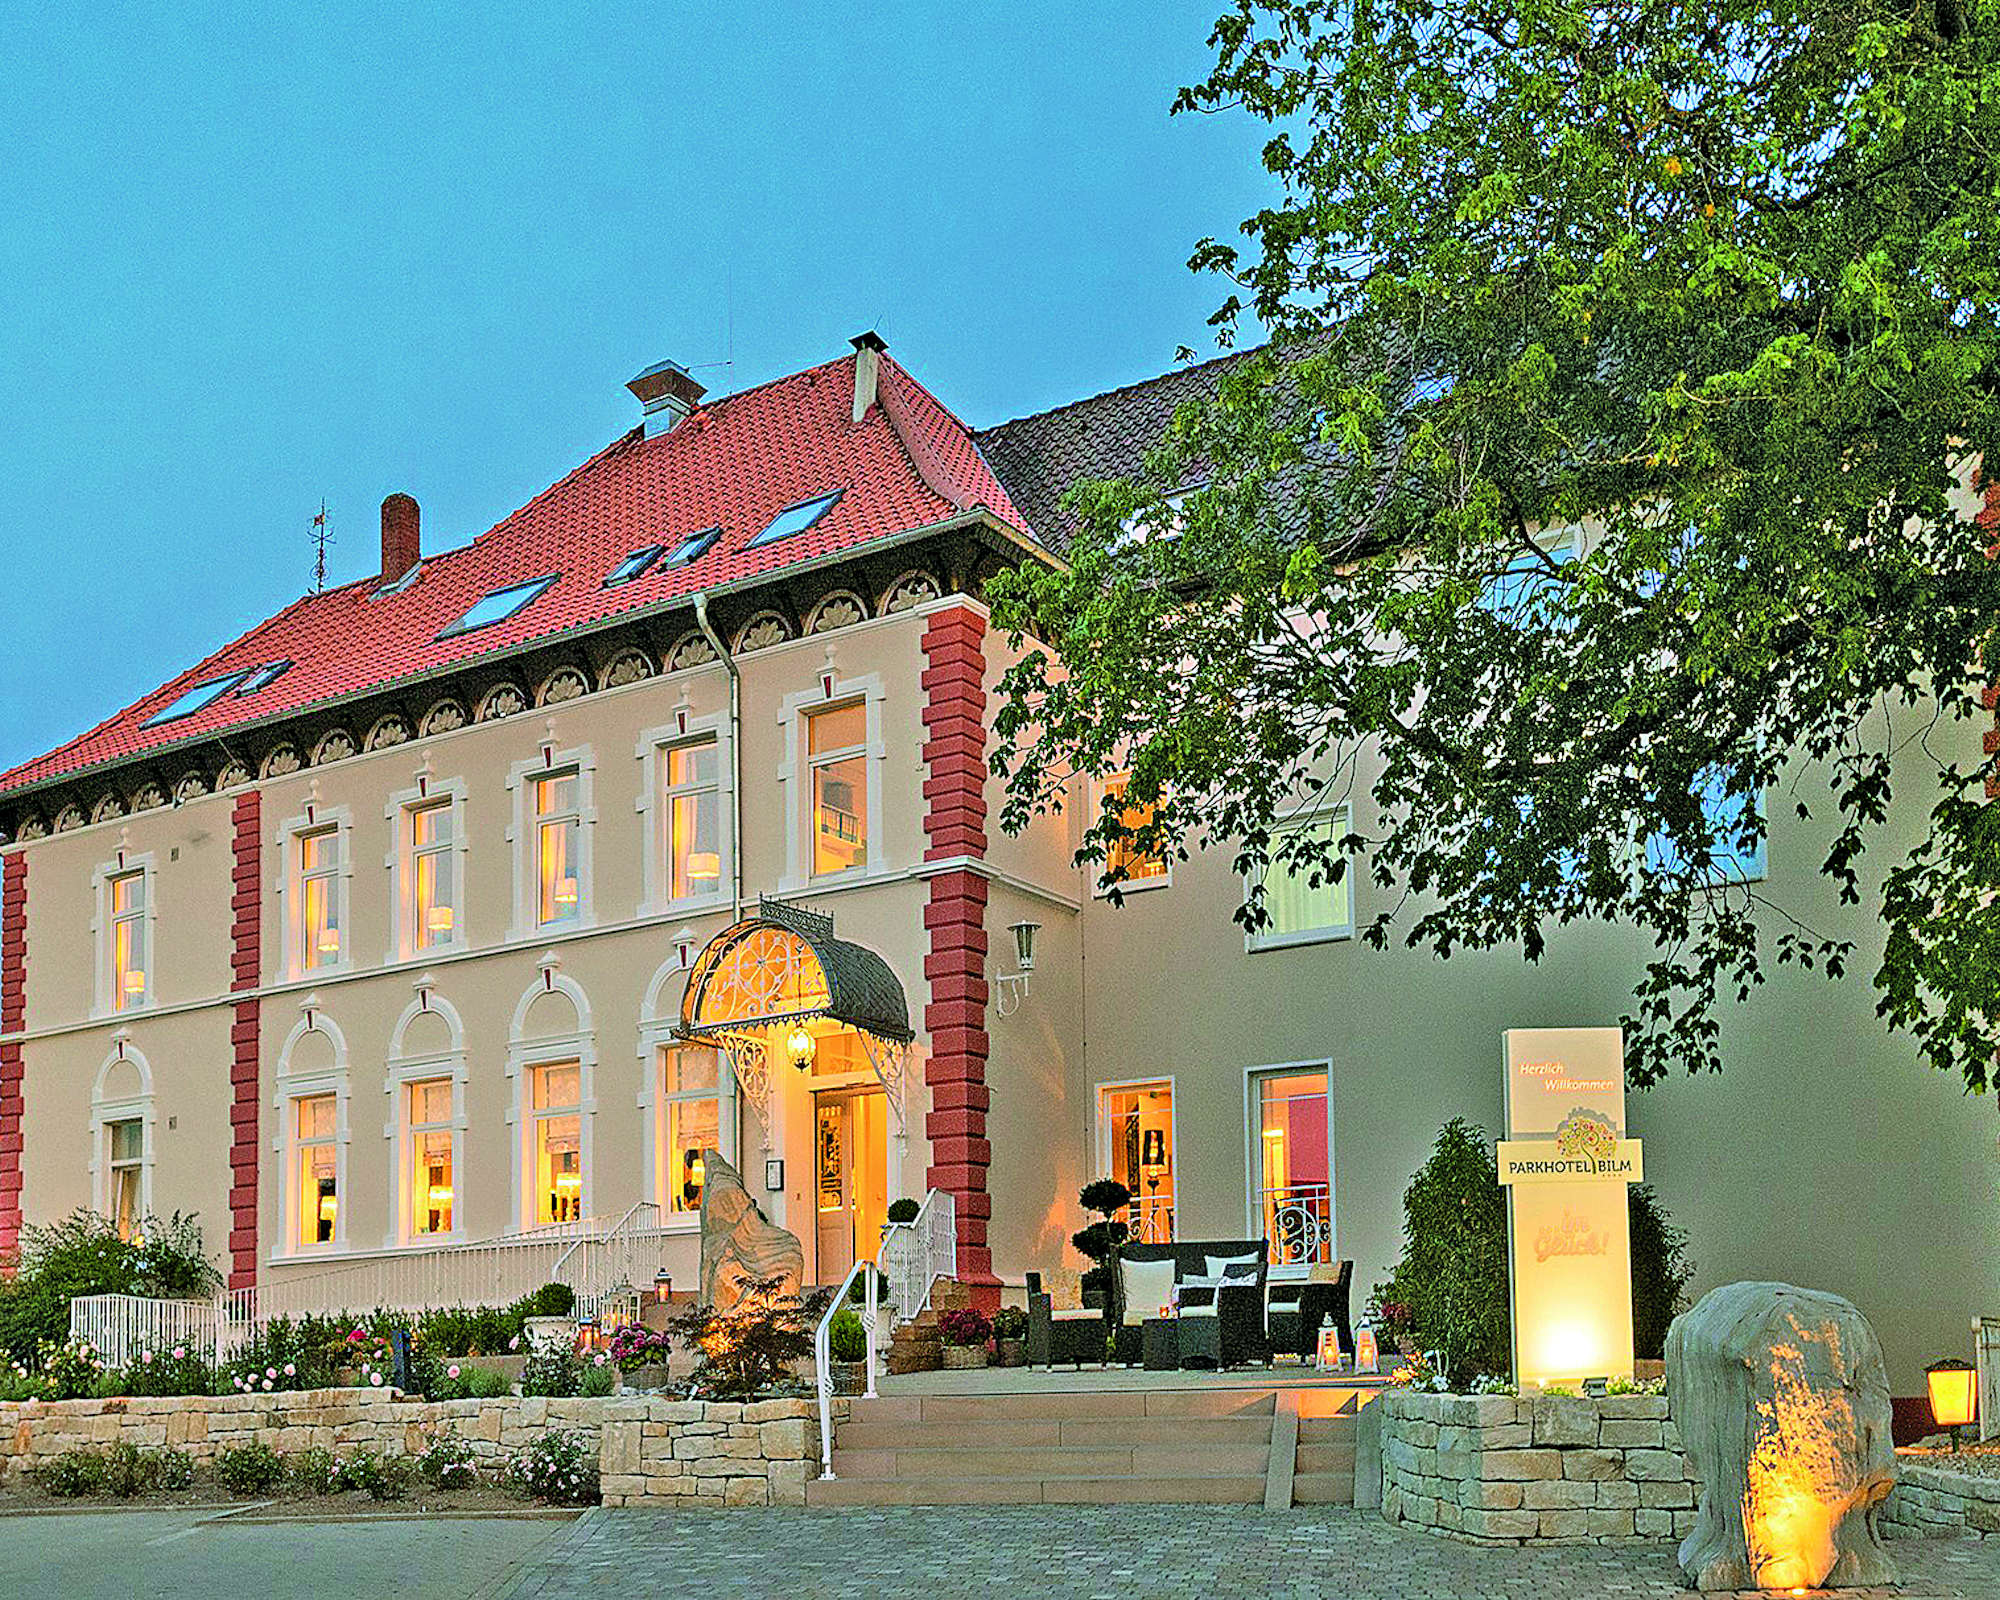 Abbildung Parkhotel Bilm im Glück am Stadtrand Hannovers